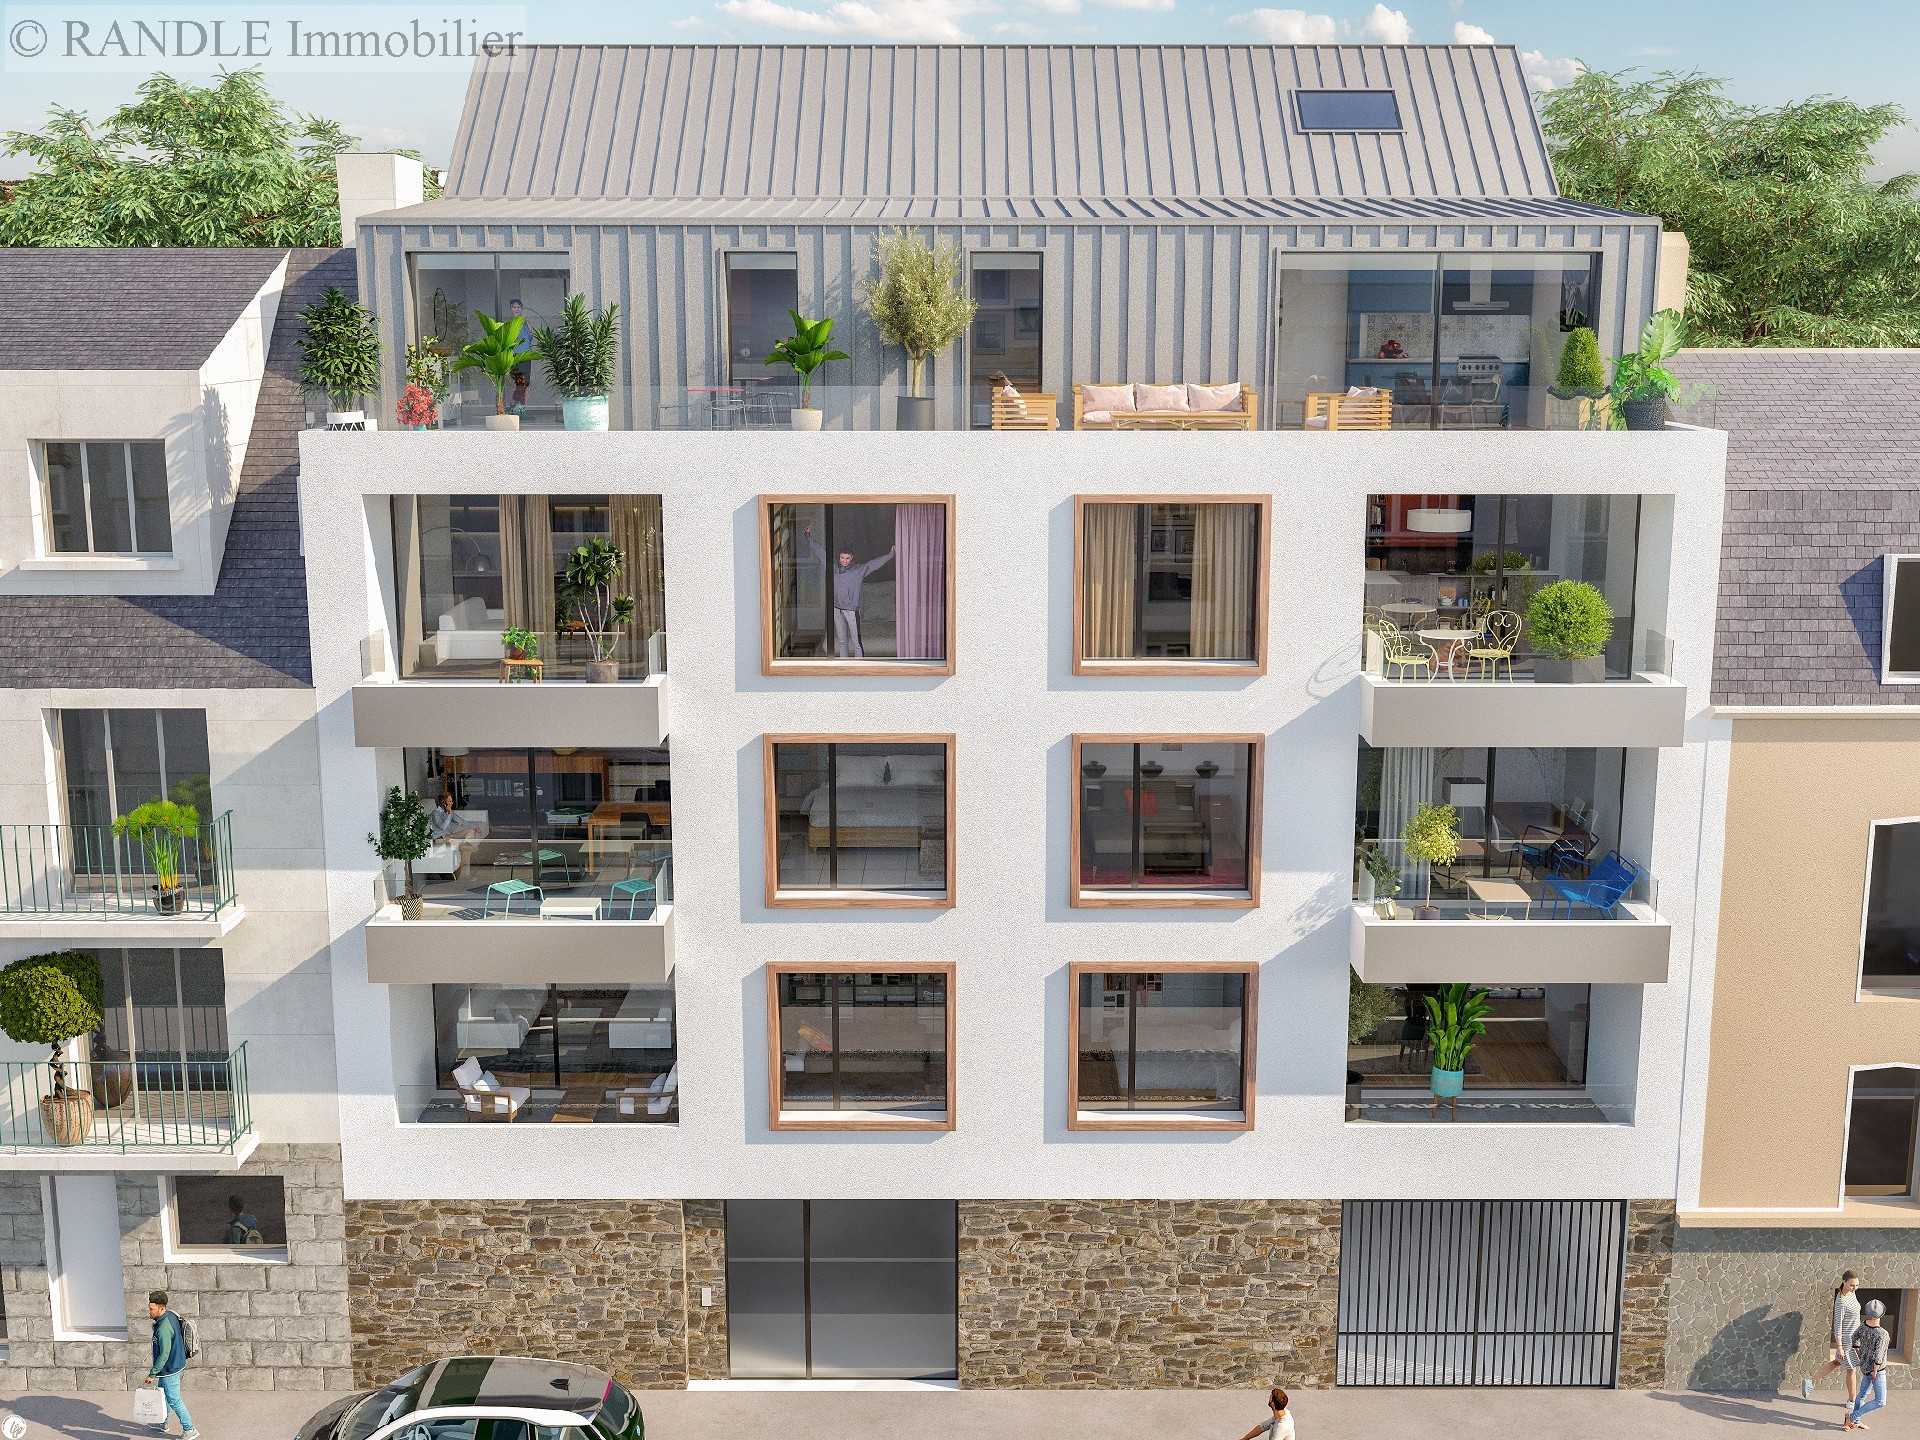 Vente appartement - LORIENT 130 m², 4 pièces